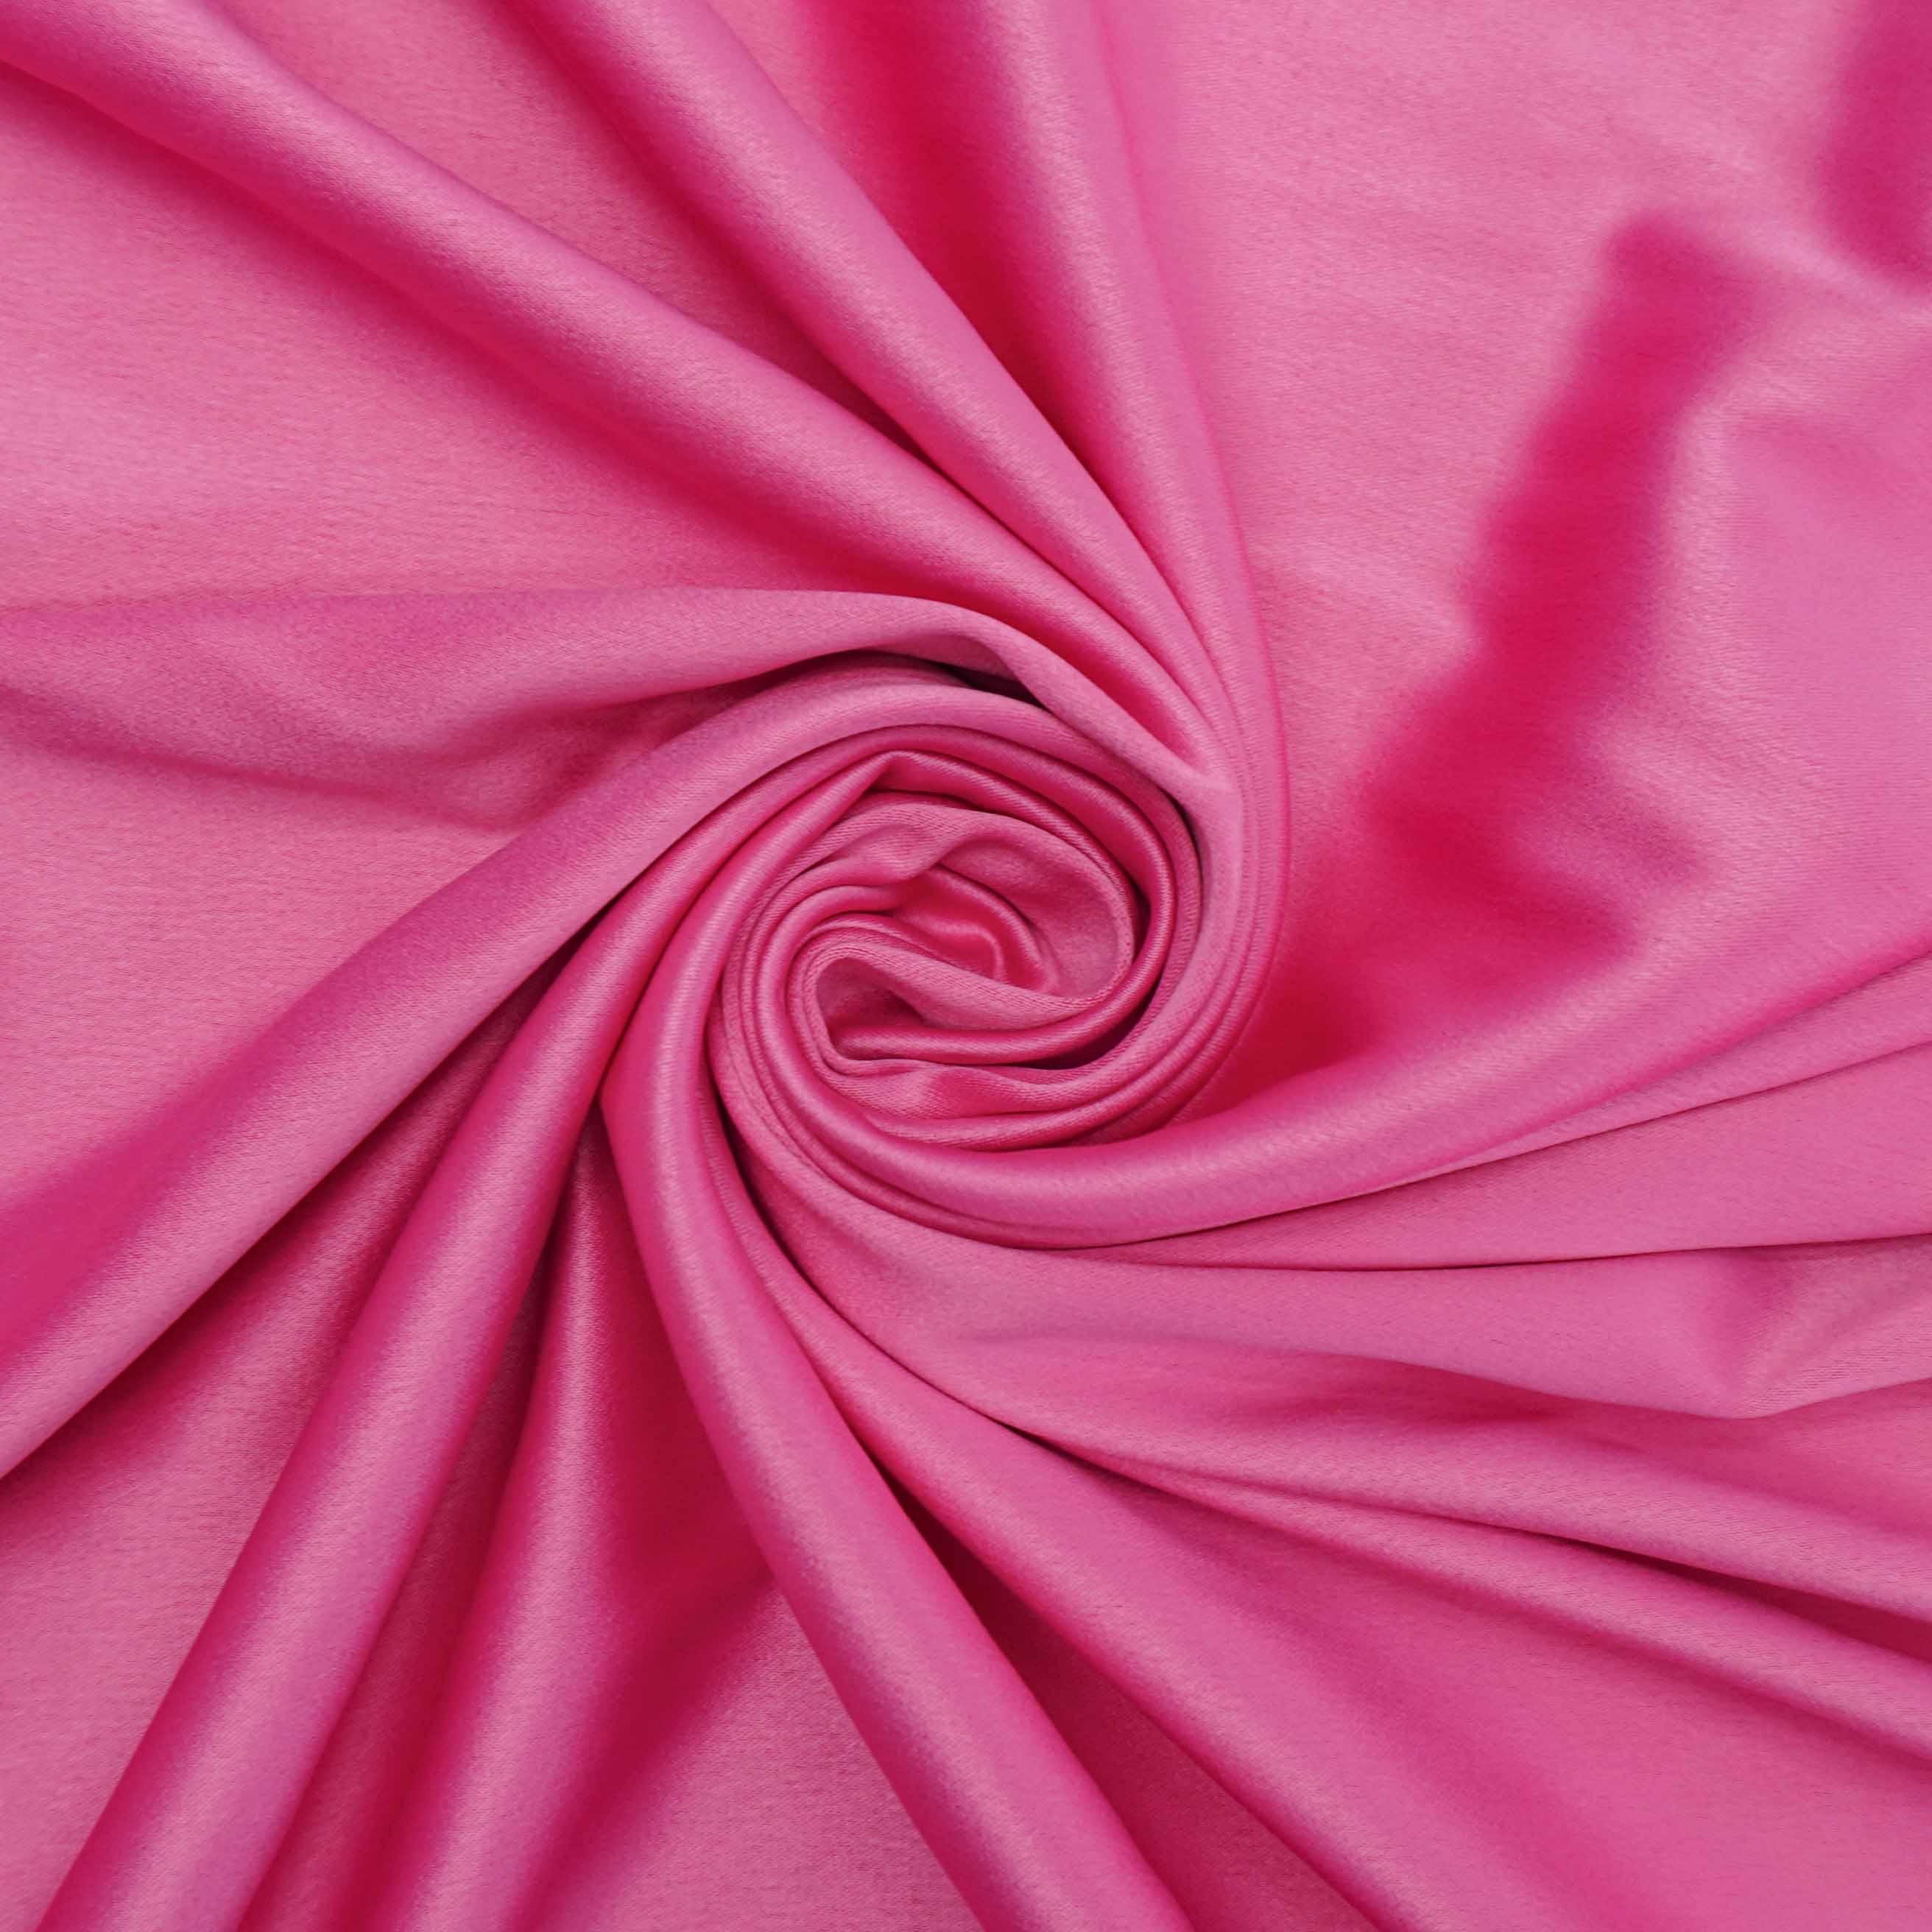 Tecido crepe versailles encorpado rosa chiclete